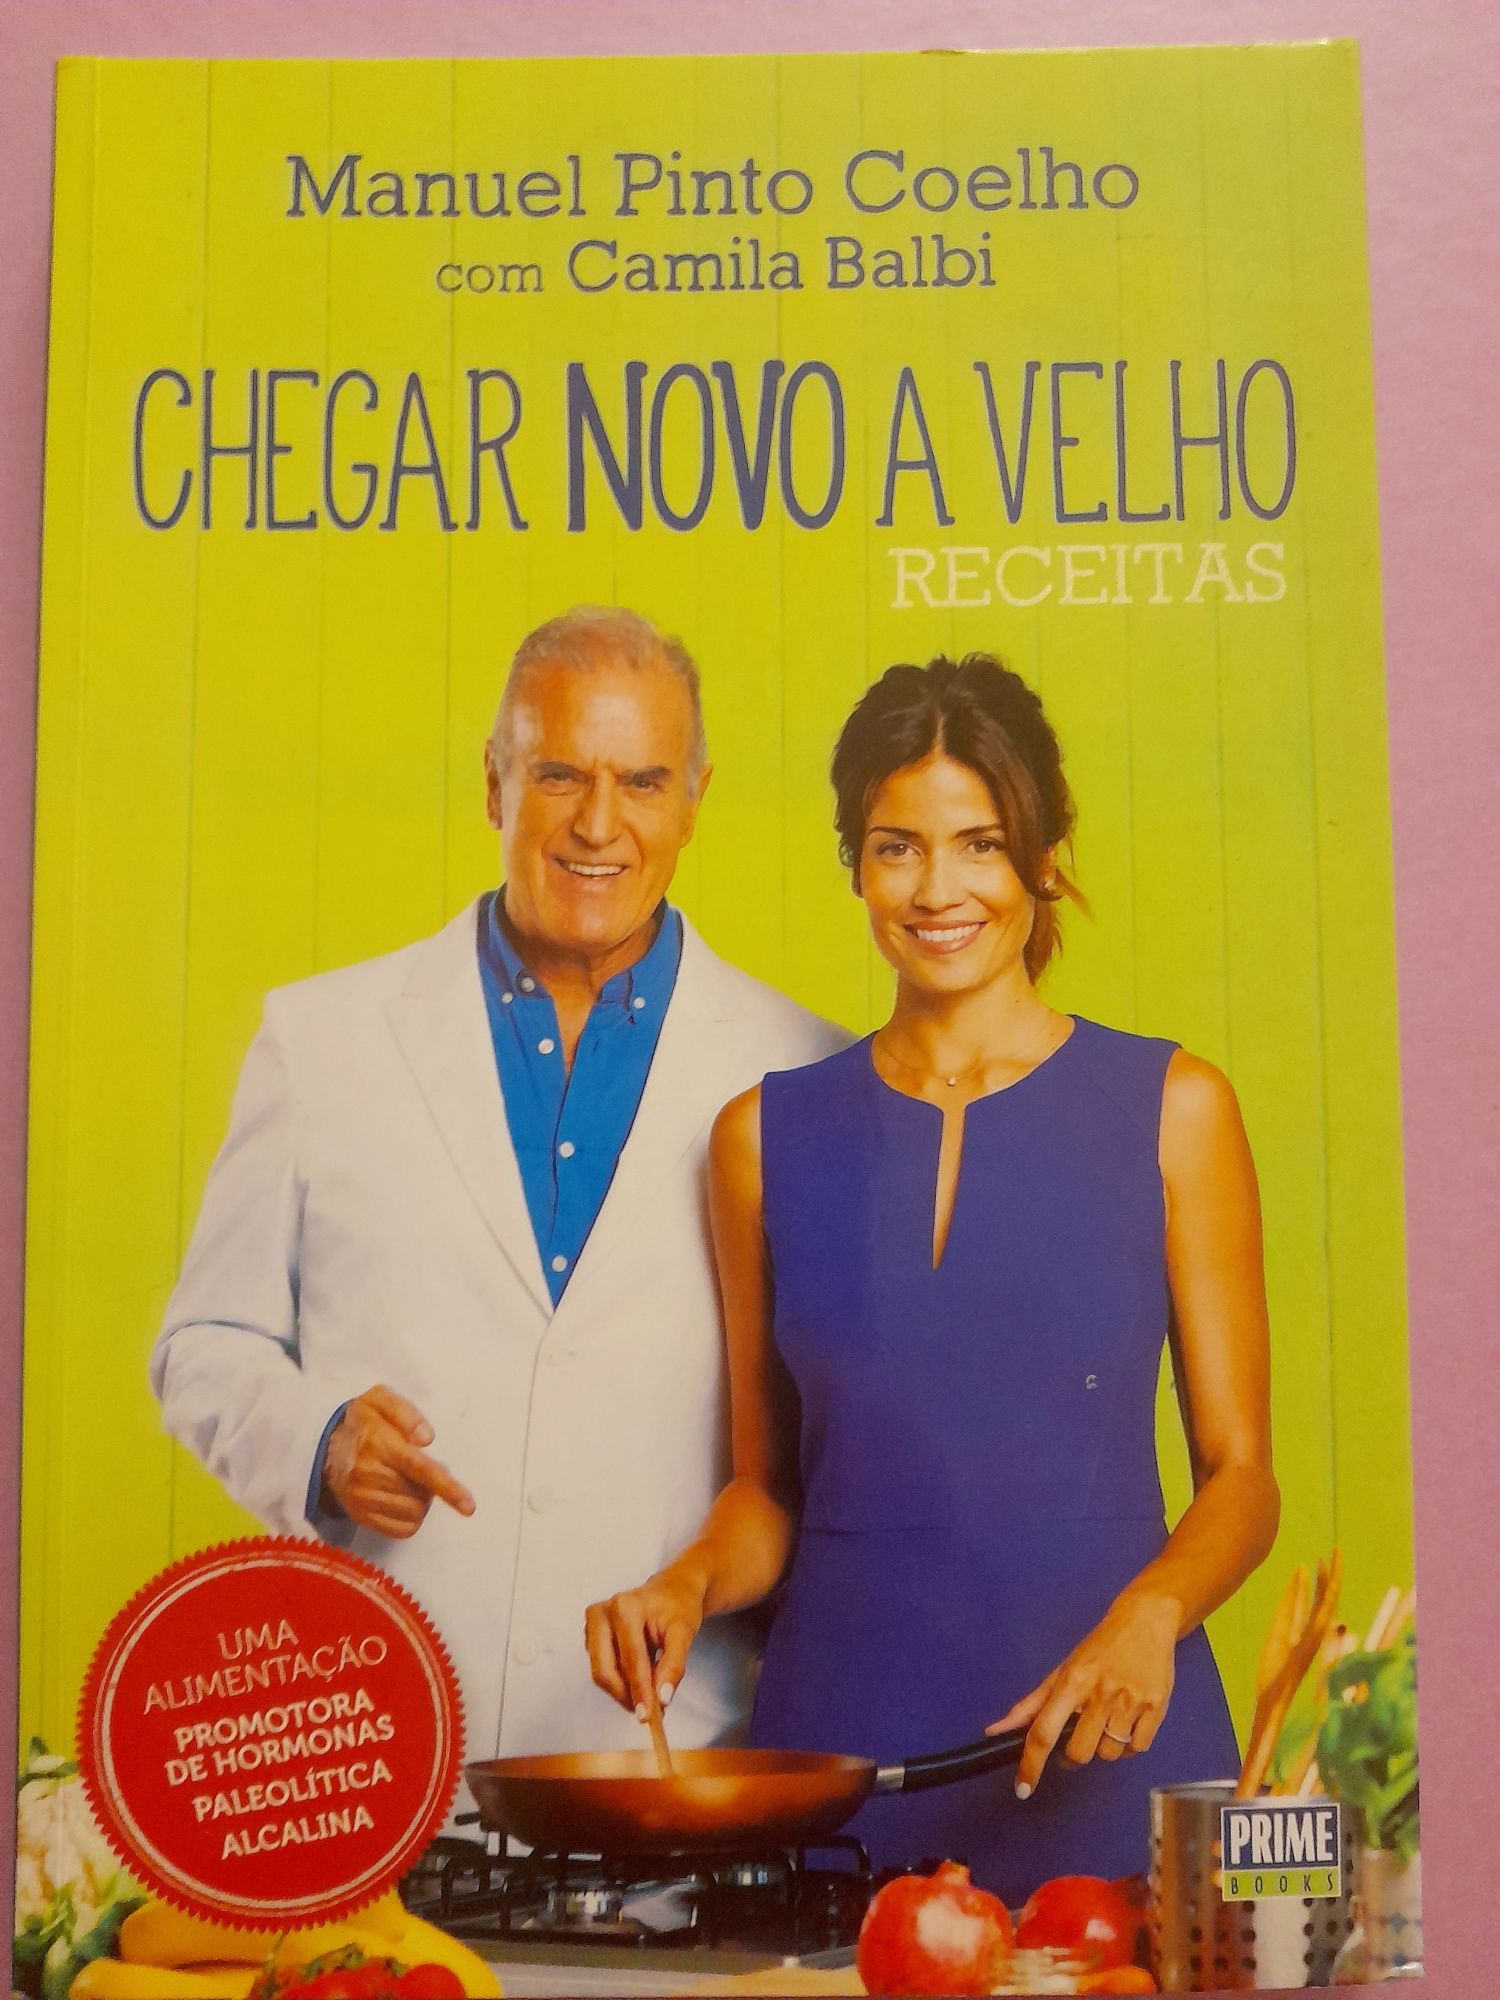 Livro "Chegar Novo a Velho" Manuel Pinto Coelho com Camila Balbi